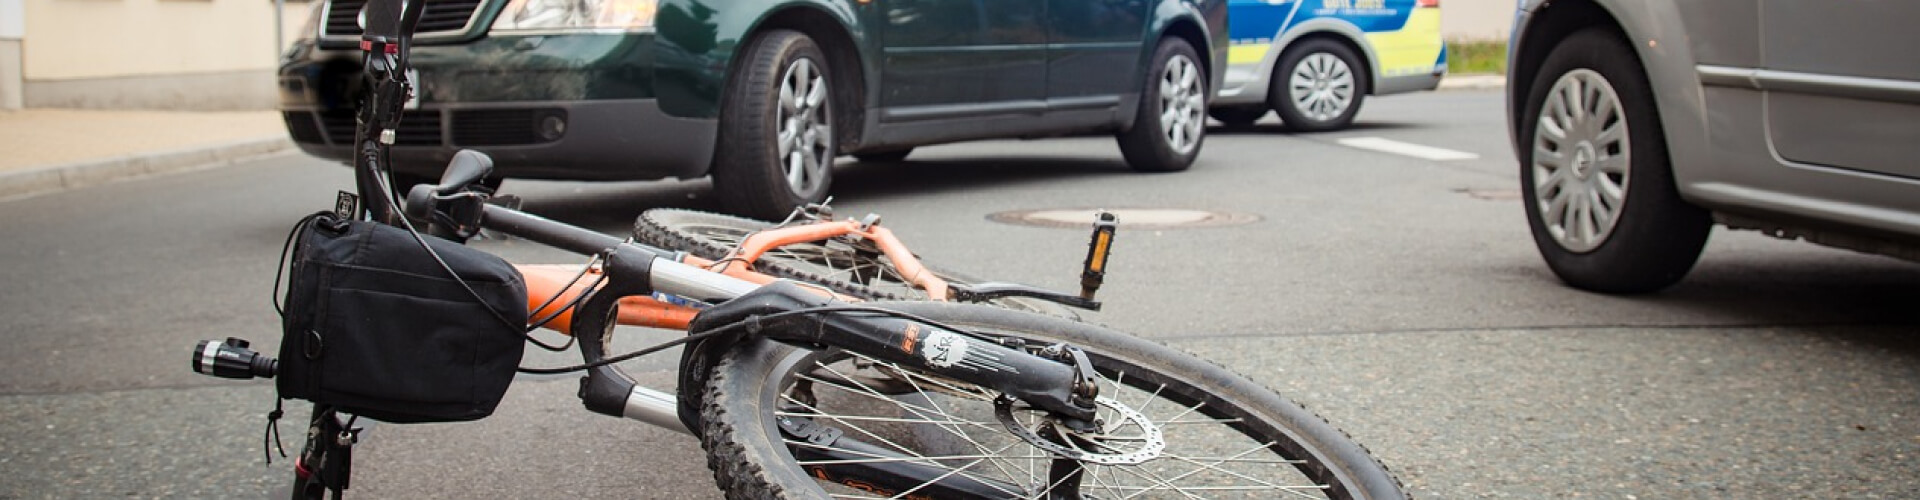 Recht op letselschadevergoeding na fietsongeluk? | Letselschade Test